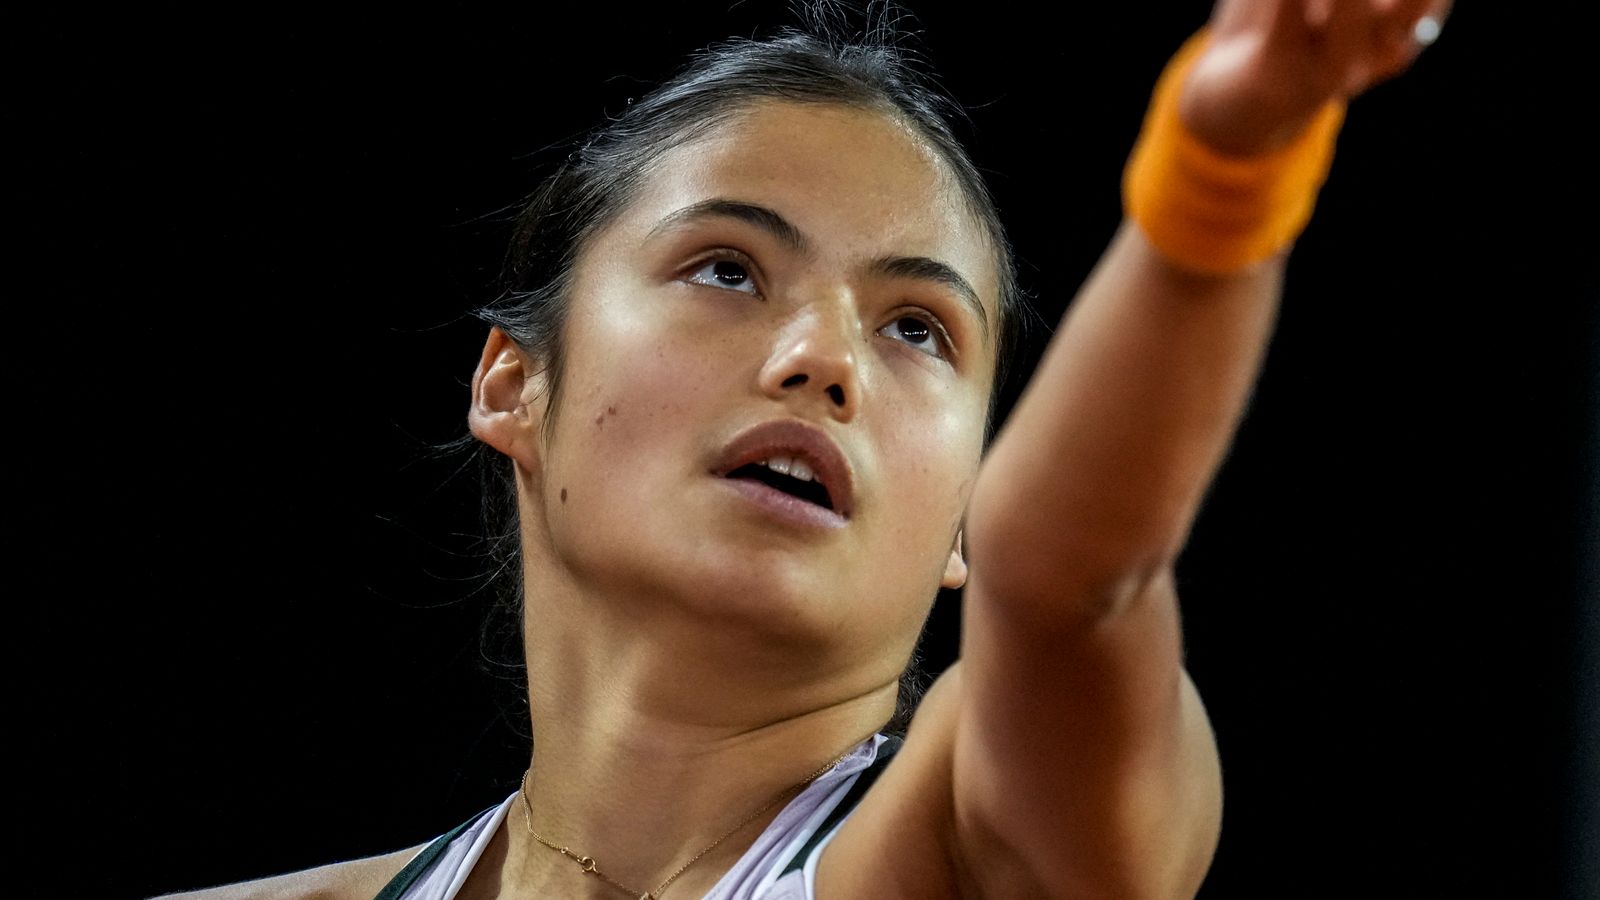 French Open: Emma Raducanu draws qualifier in first round at Roland Garros